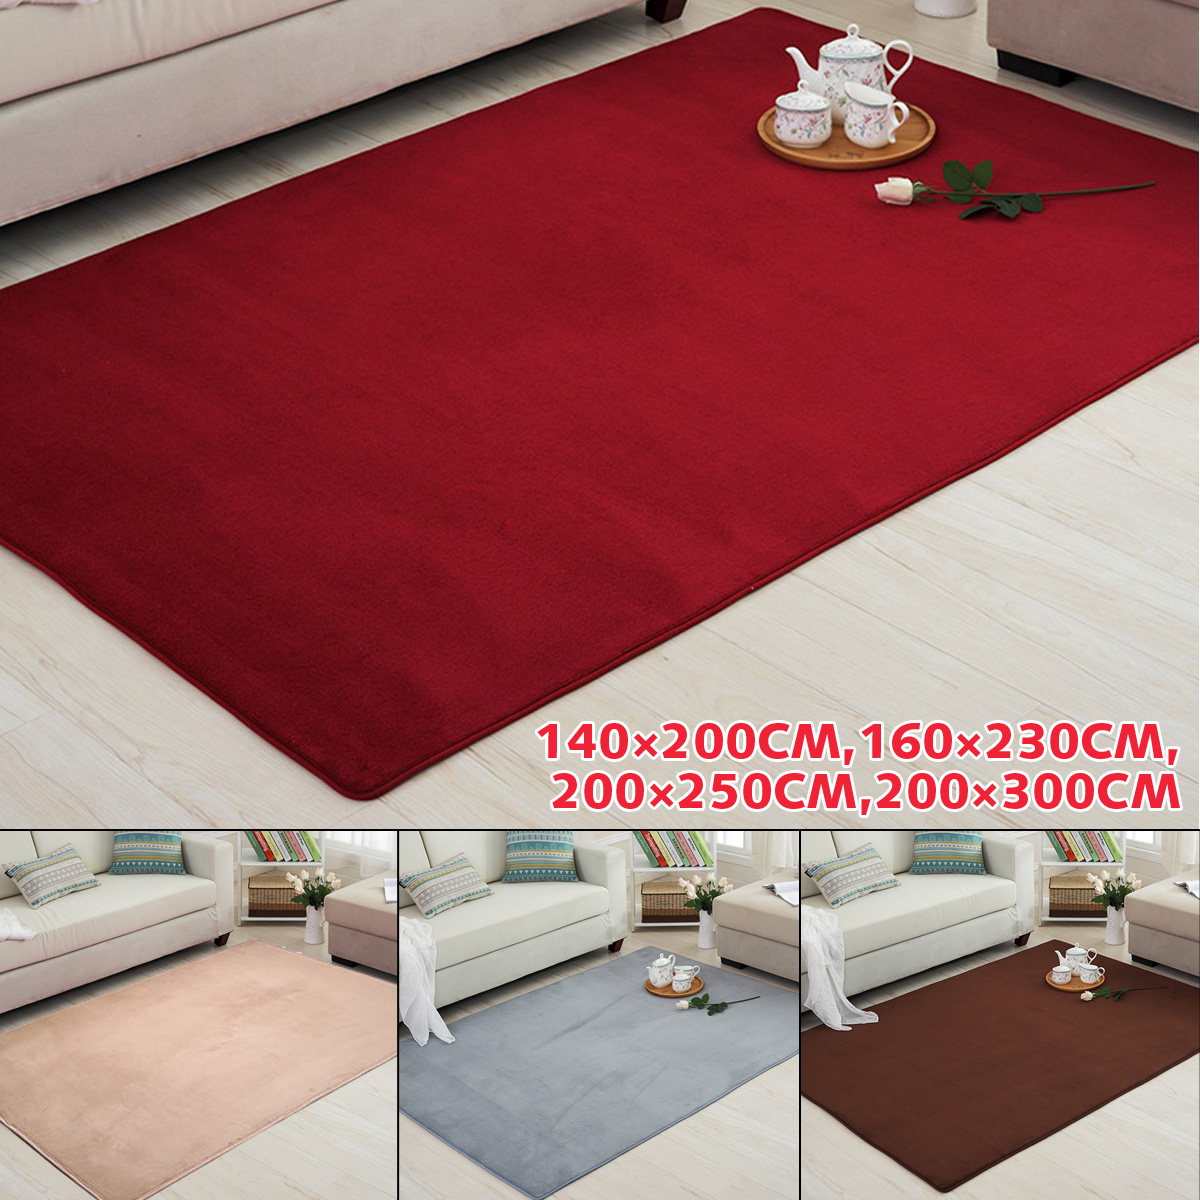 4-Sizes-Carpet-Modern-Living-Room-Area-Carpet-Bedroom-Bedside-Rug-Home-Decoration-1637671-1